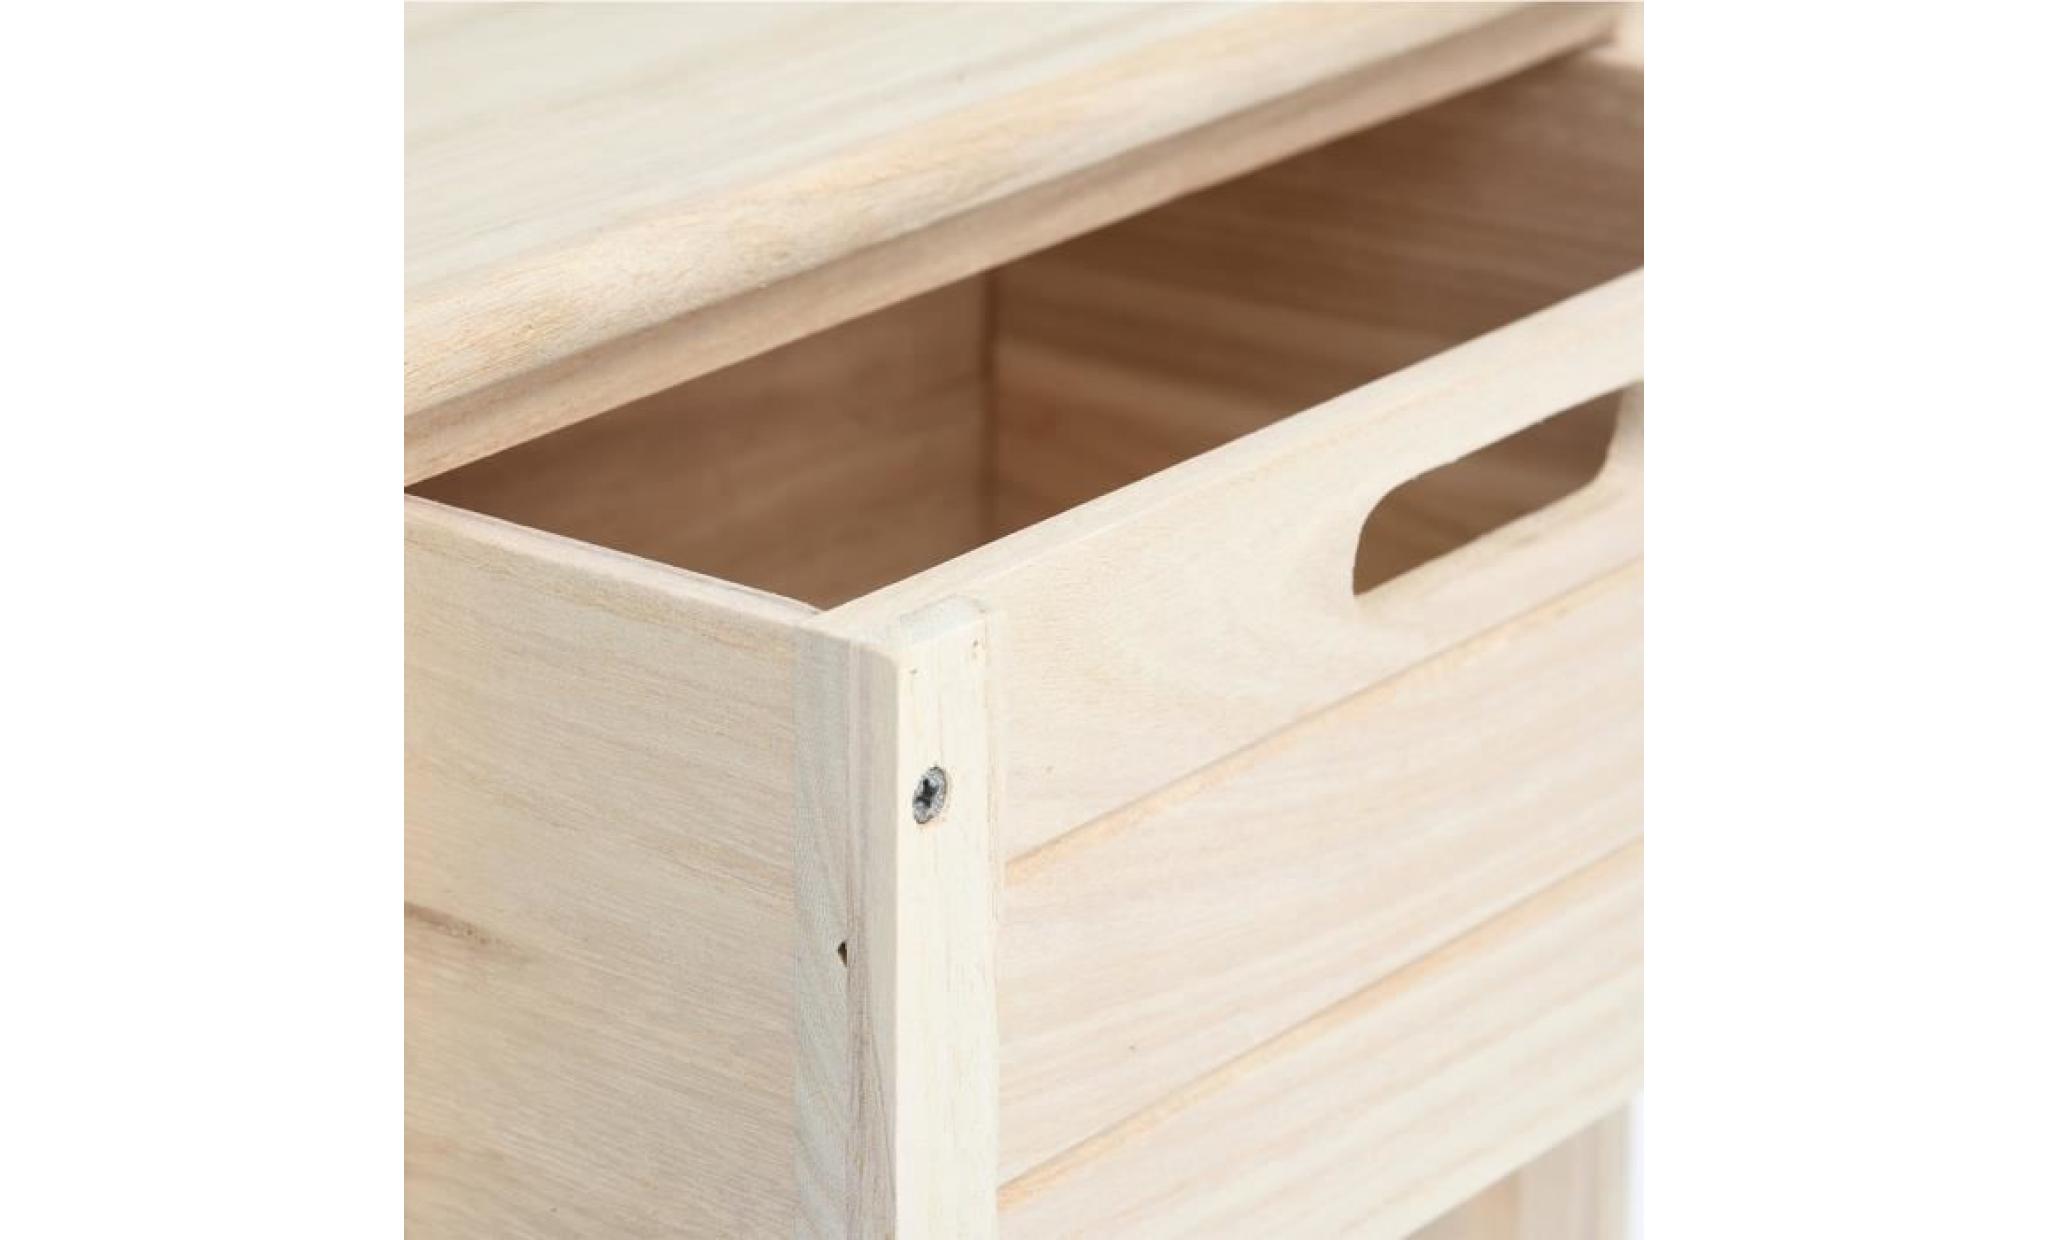 furnish 1 meuble en bois avec 4 tiroirs, rangement solide pour le salon et le bureau. pas cher